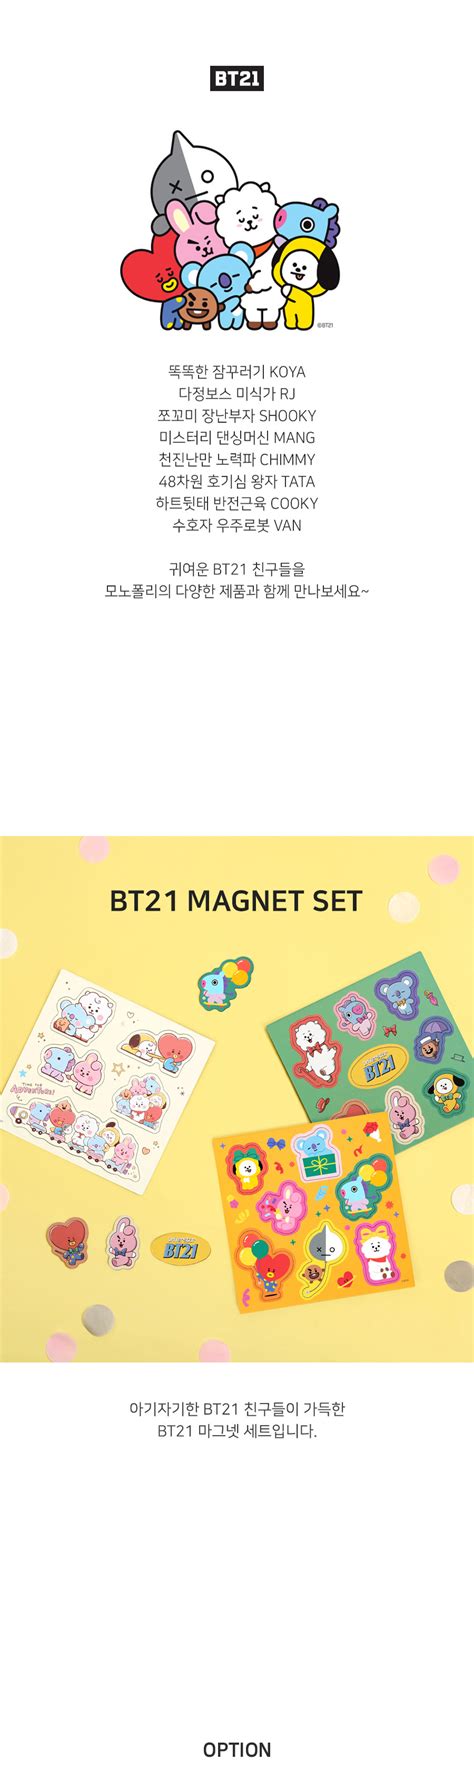 Bt21 Bt21 X Monopoly Collaboration Magnet Set